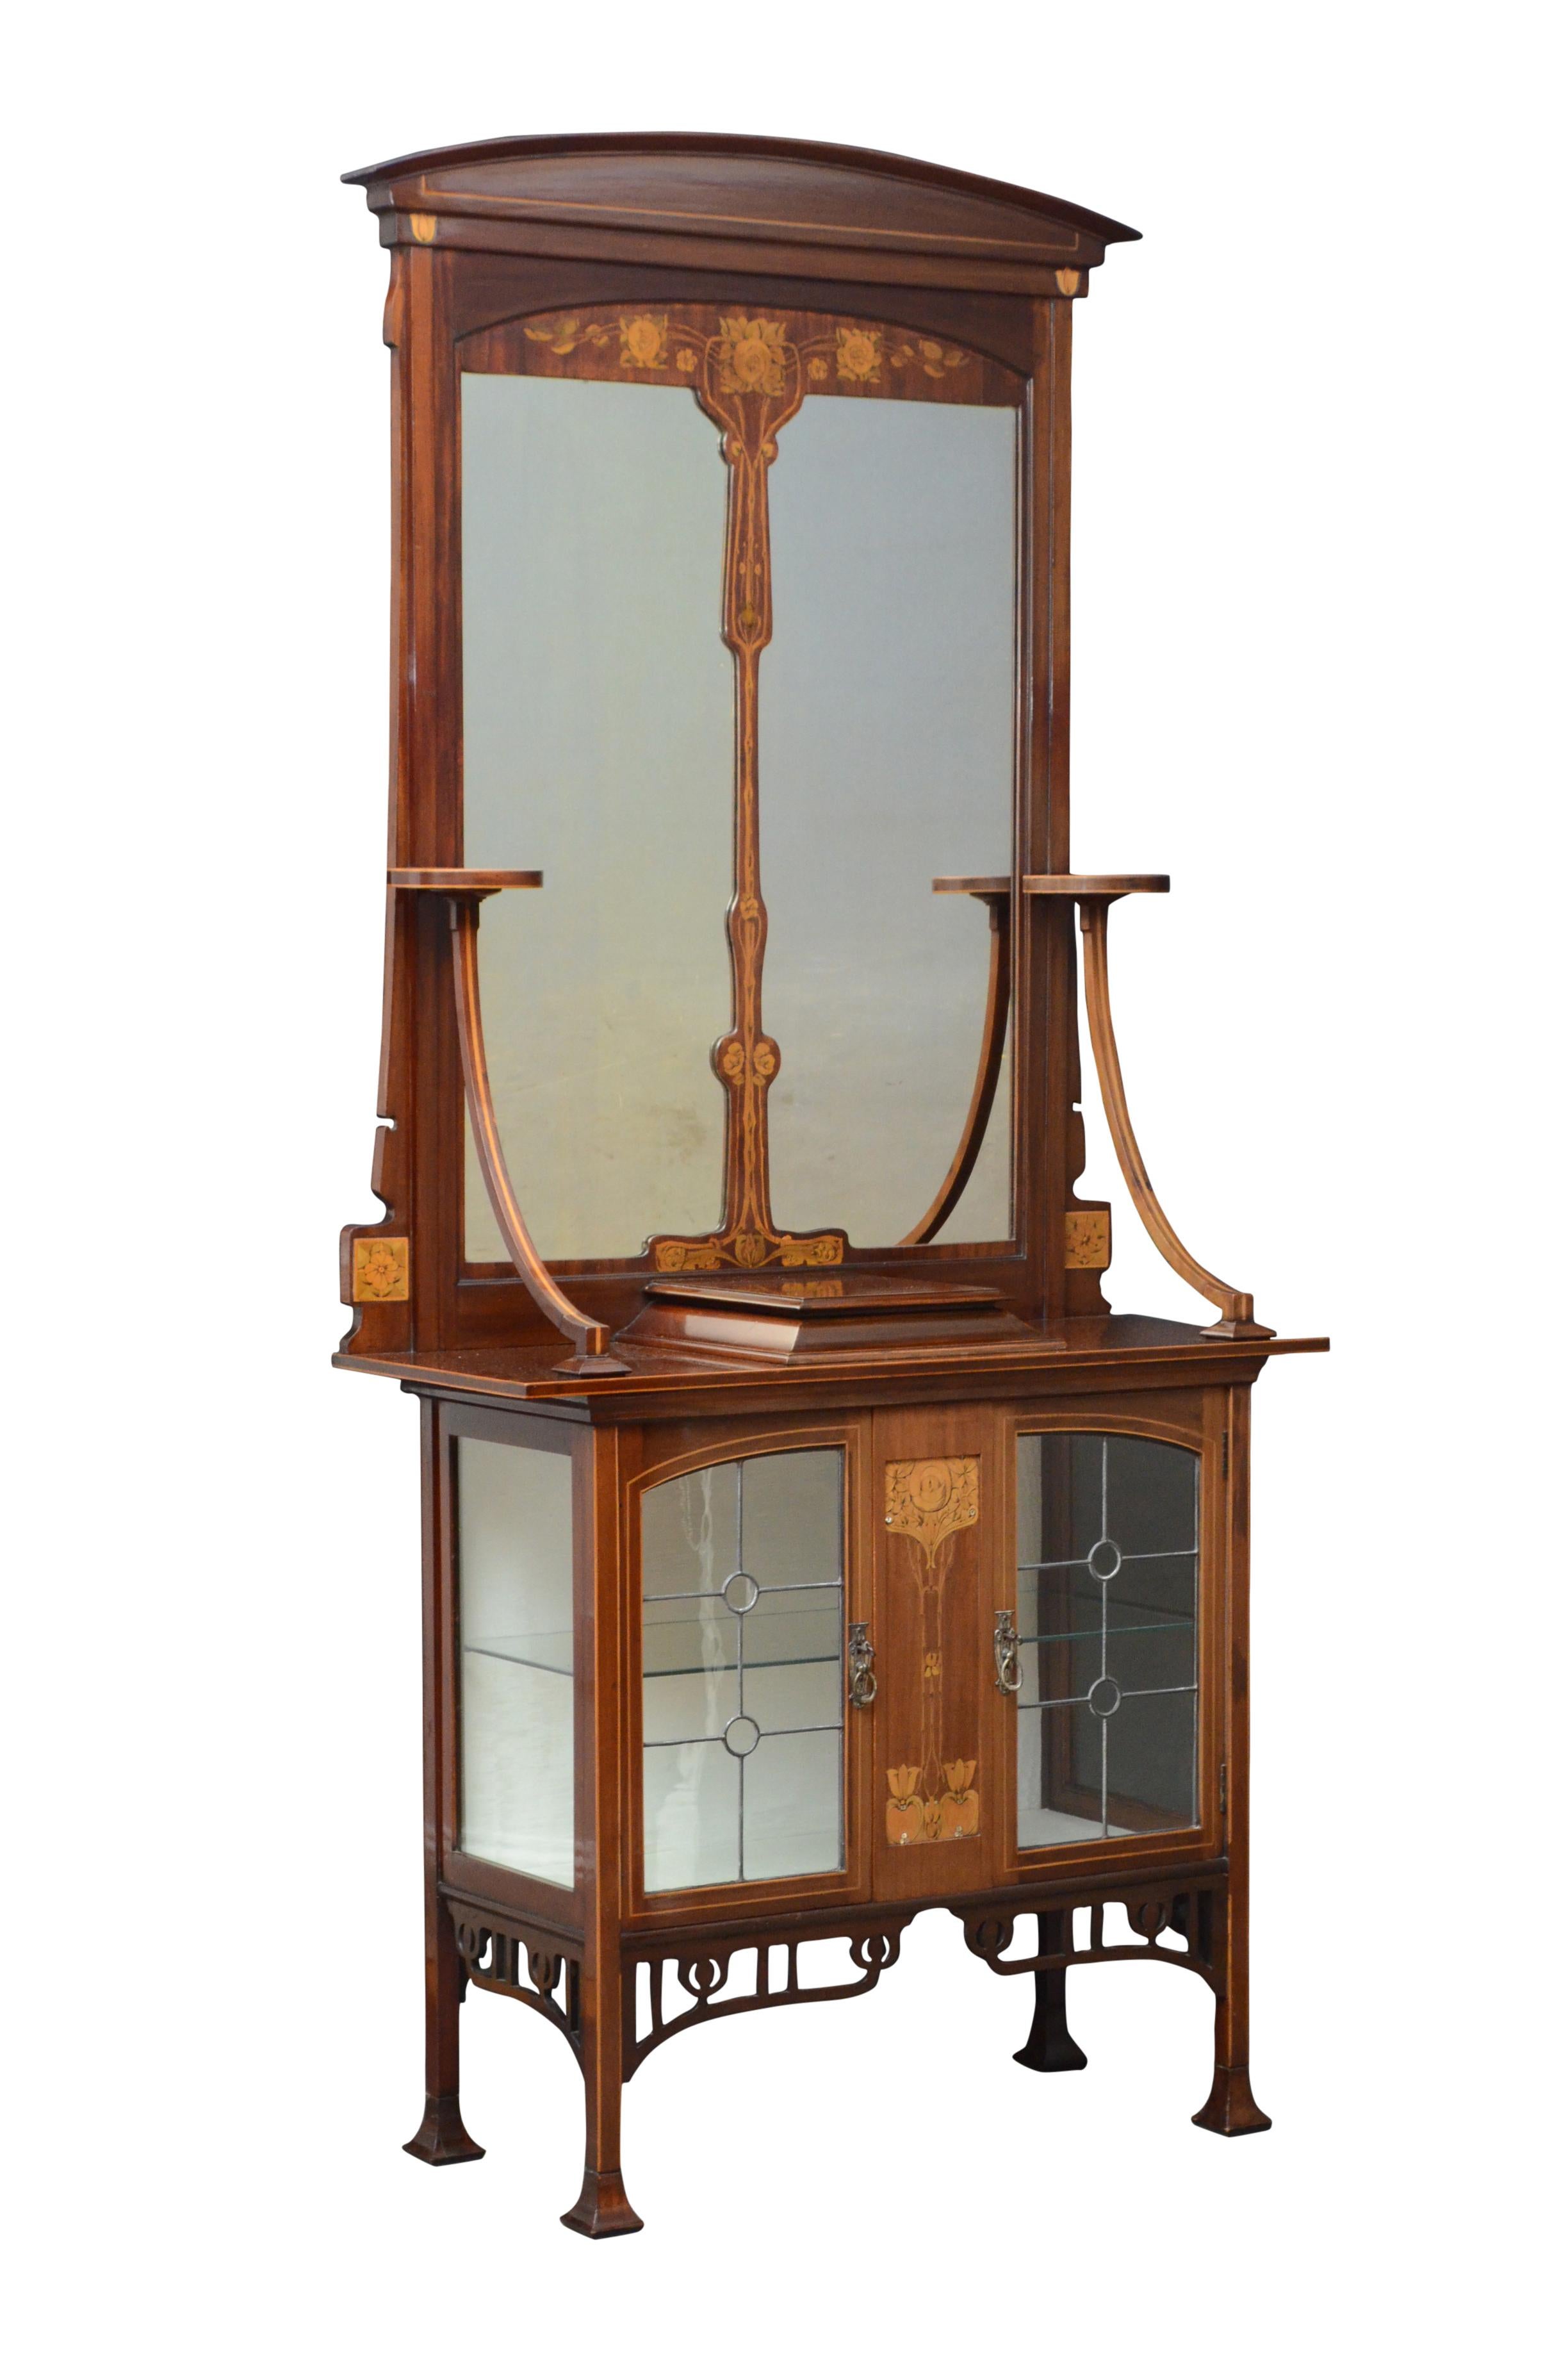 K0450 stilvolle Art Nouveau Mahagoni und Intarsien Halle Kabinett mit gewölbten Wappen über geteilten Spiegel flankiert von einem Paar von kreisförmigen Plattformen auf downswept unterstützt, die vorspringende Basis mit floralen